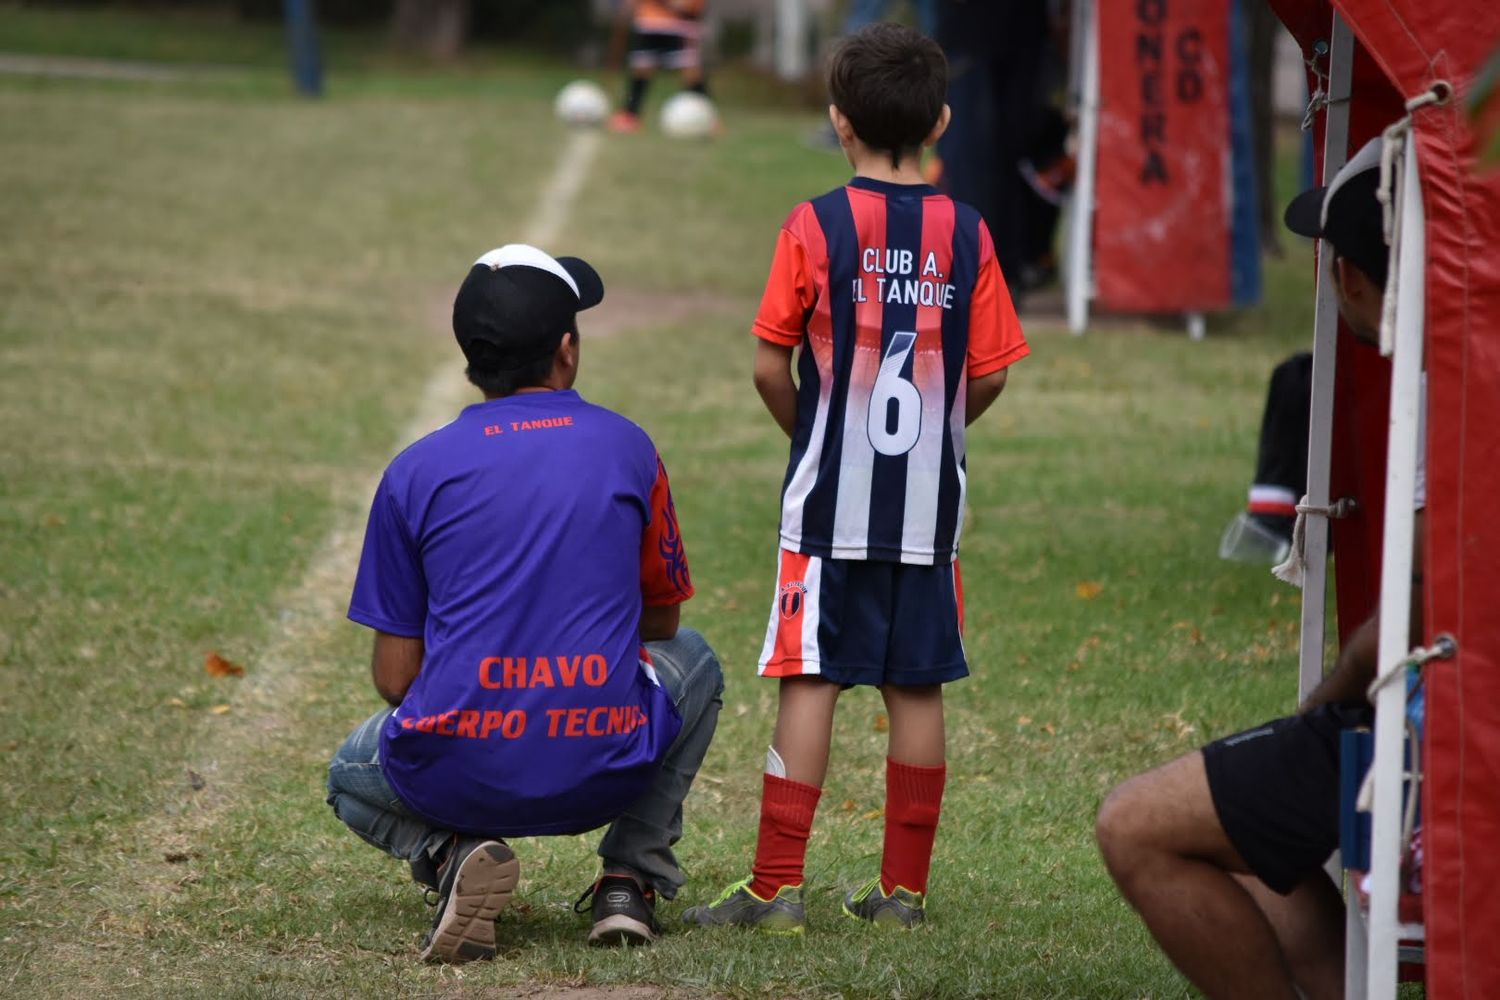 La Liga Infantil habilitó amistosos para empezar el torneo Martín Actis el 28 de agosto